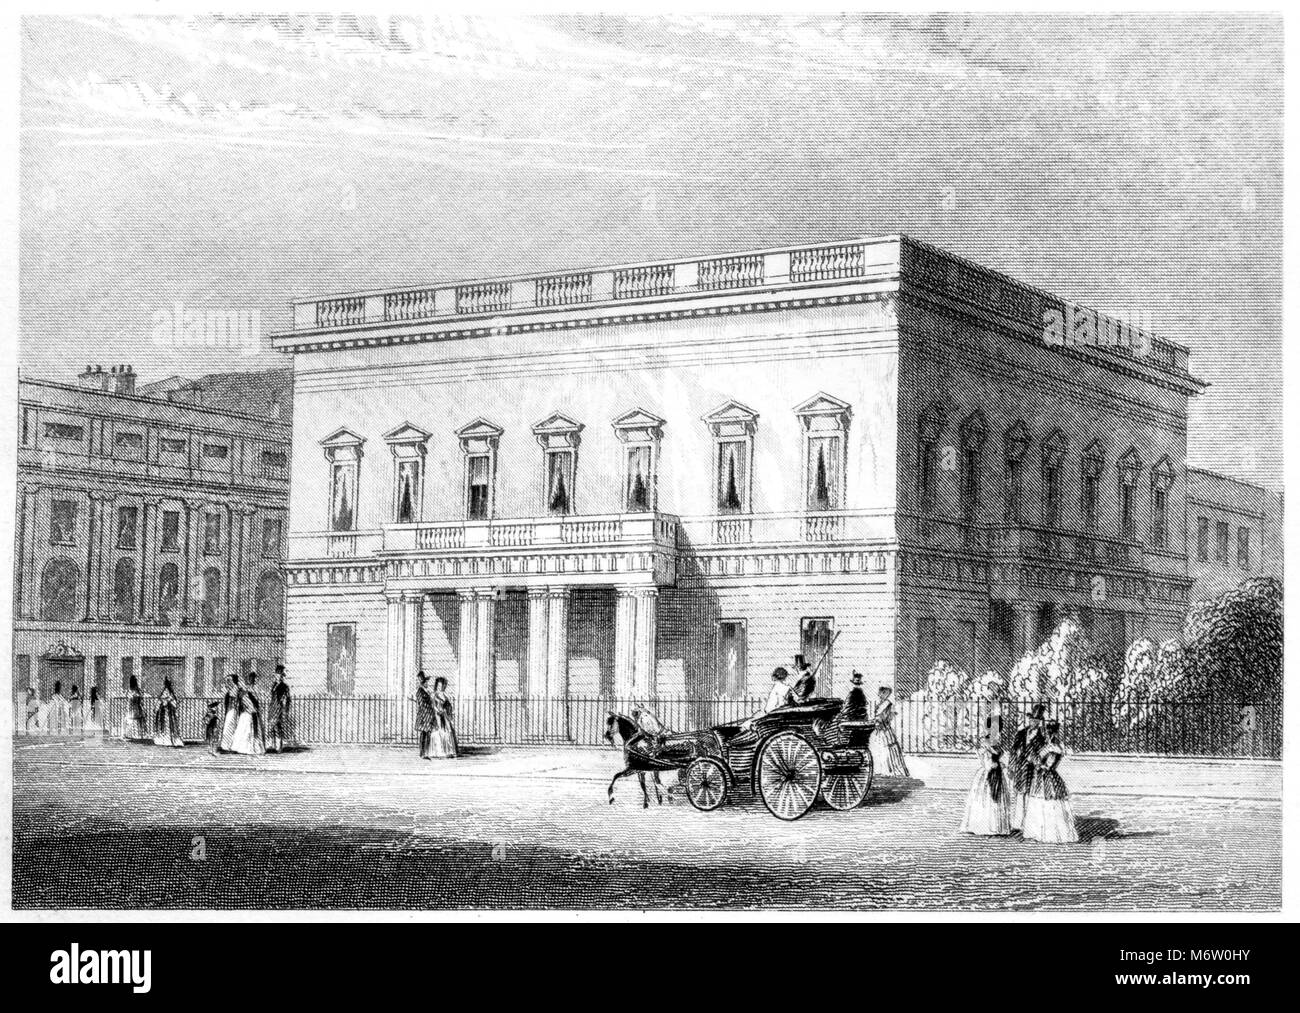 Eine Gravur der Neuen United Service Club House, London gescannt und in hoher Auflösung aus einem Buch im Jahre 1851 gedruckt. Glaubten copyright frei. Stockfoto